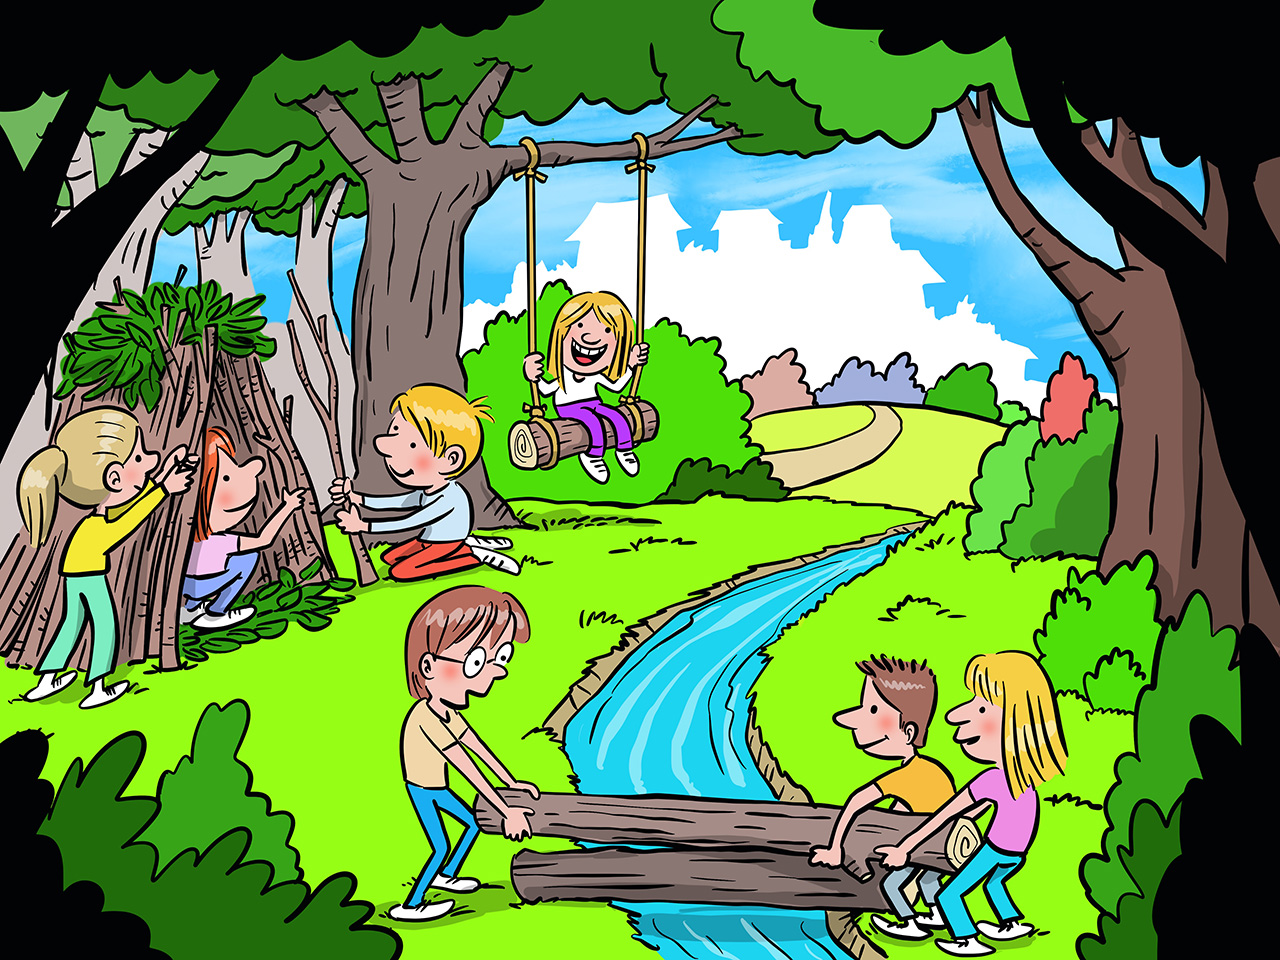 Djeca grade mostić preko potoka te kolibu od granja i lišća u kojoj će se igrati.